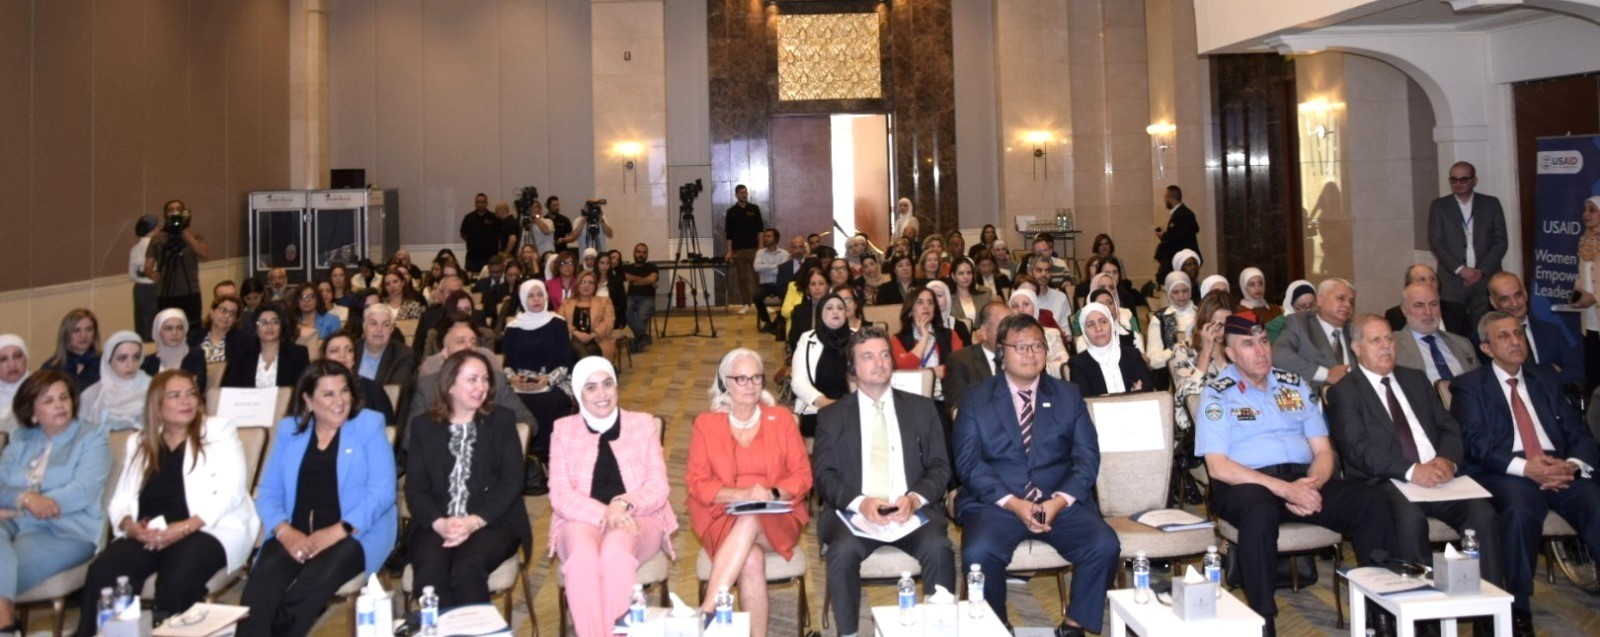 وزيرة التنمية الاجتماعية ترعى اطلاق دراسة "الهوية الاقتصادية للمرأة في المحافظات"